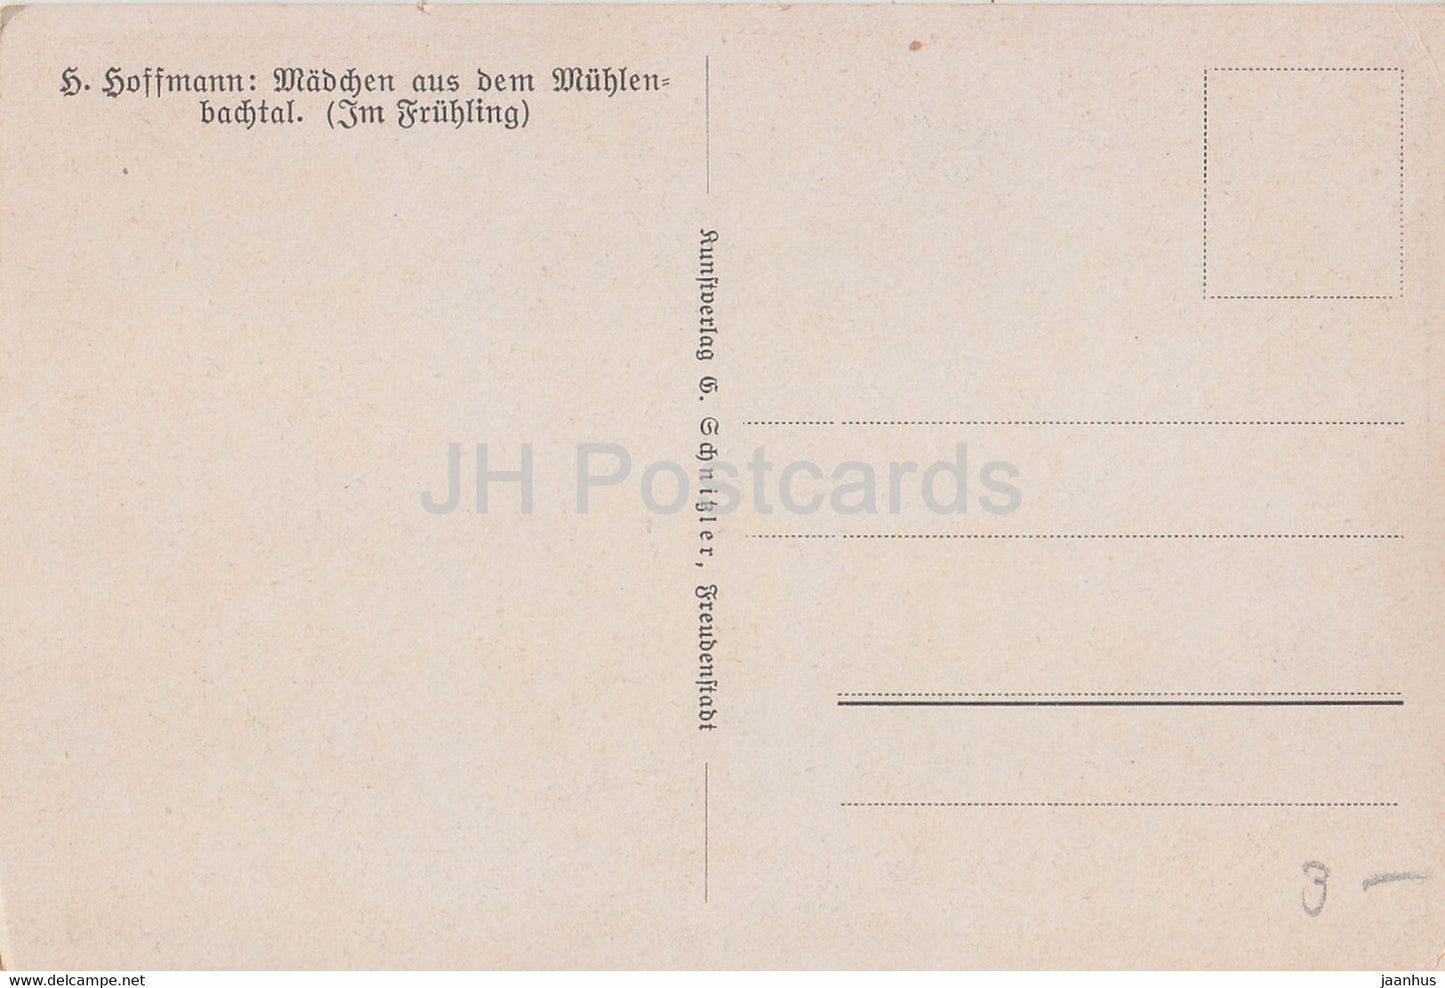 Madchen aus dem Muhlenbachtal - costumes folkloriques - poulet - chien - illustration de H. Hoffmann - carte postale ancienne - inutilisée